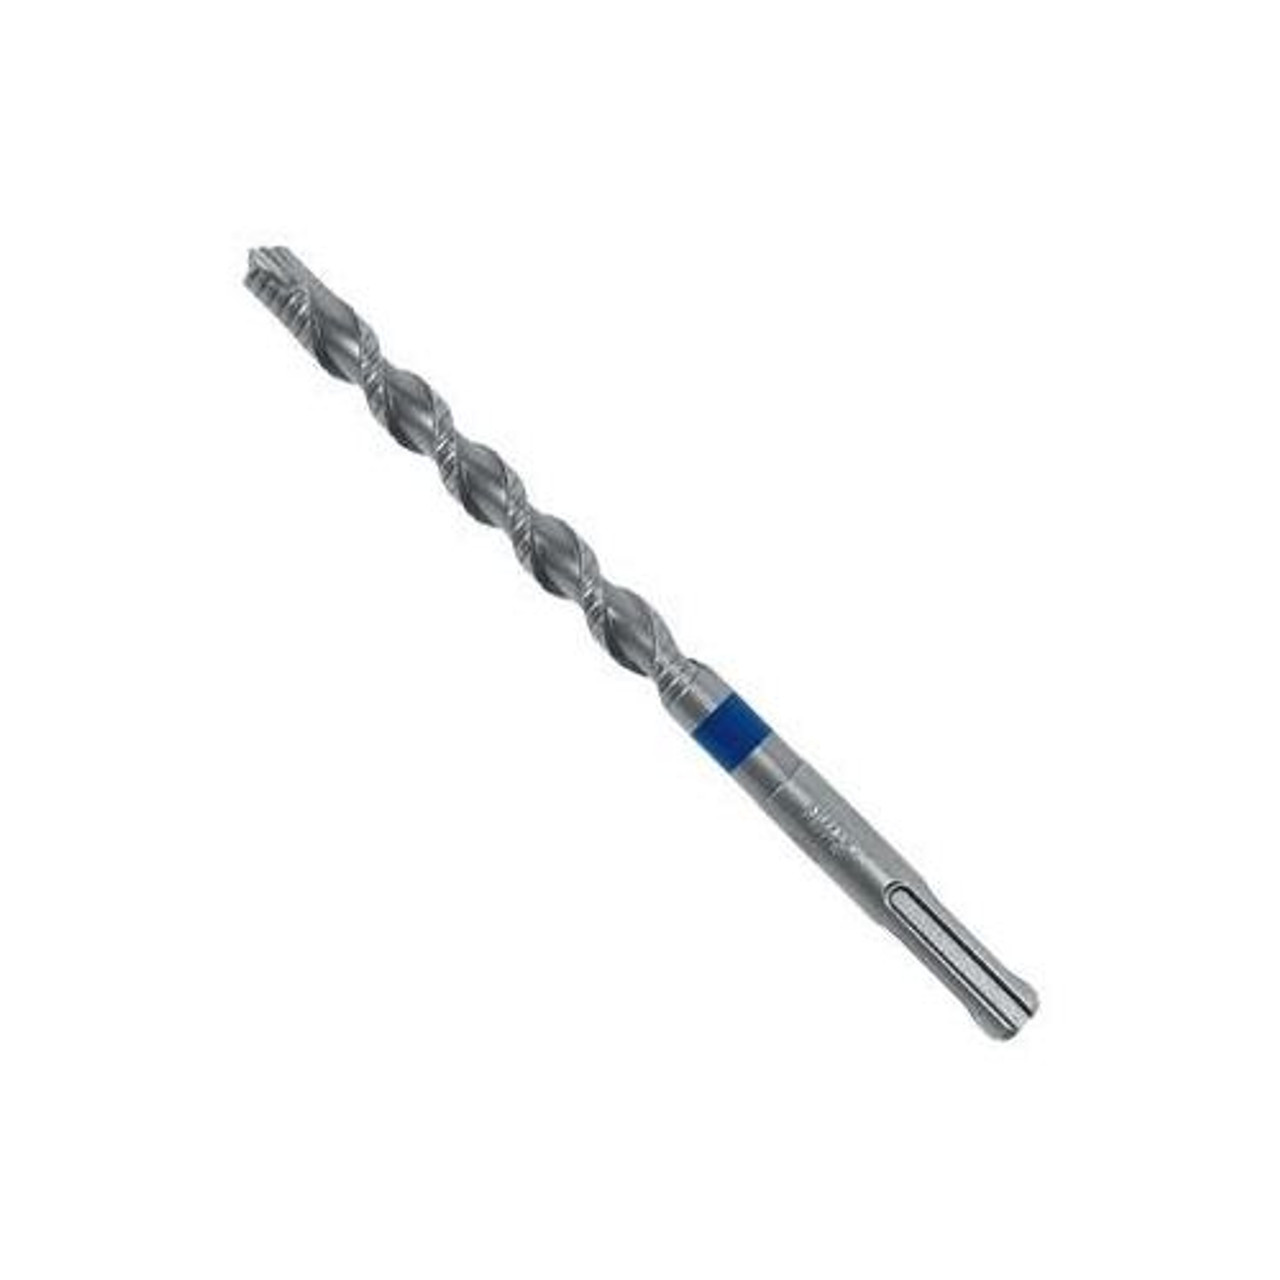 Irwin Tools 4935441 Single Speedhammer Power Masonry Drill Bit, 1/2